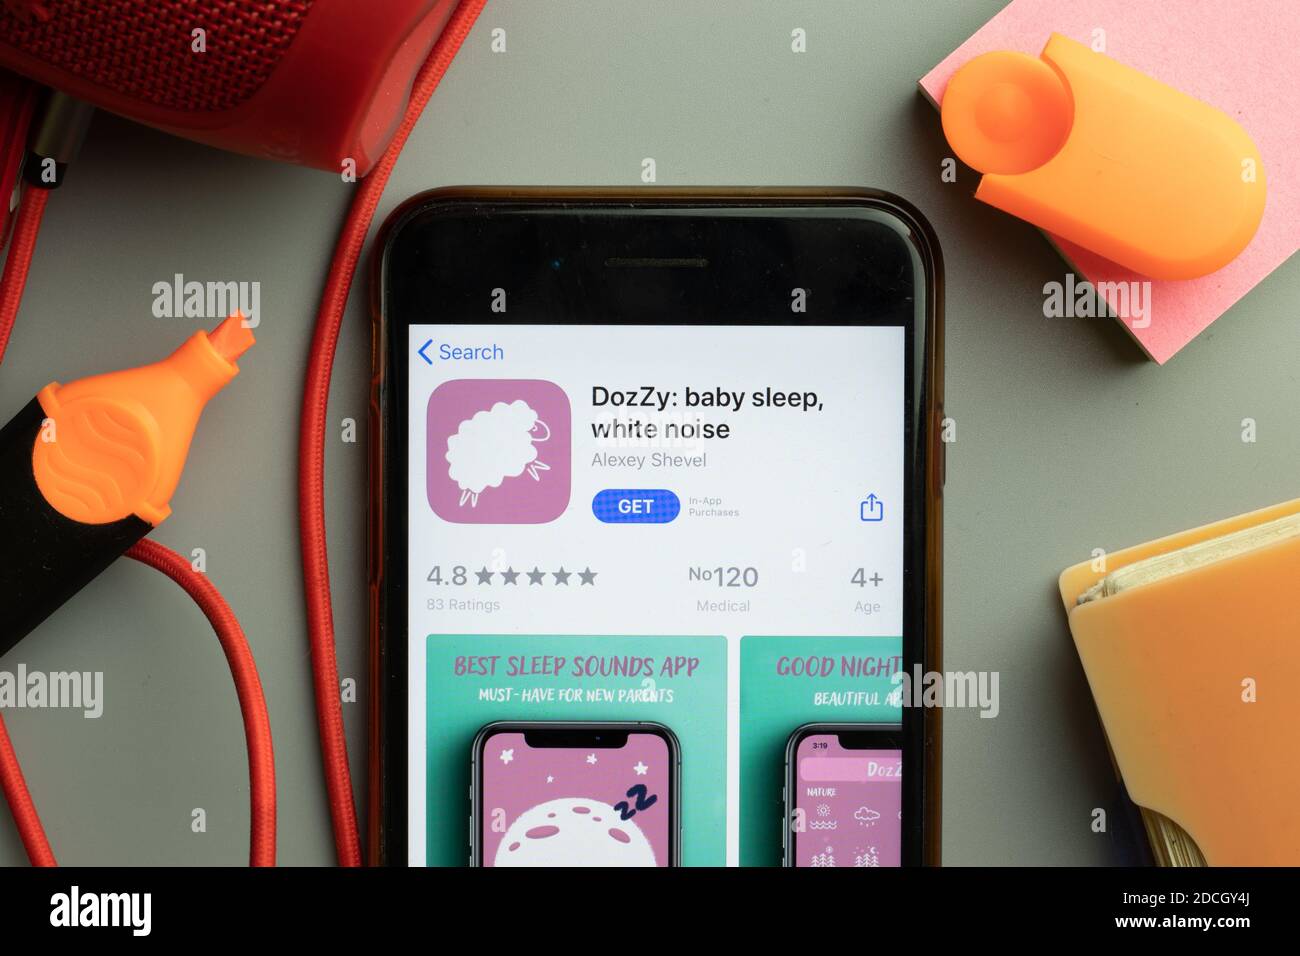 New York, Stati Uniti - 7 novembre 2020: Primo piano dello schermo del telefono con il logo dell'app mobile Dozy baby sleep in esposizione, editoriale illustrativo. Foto Stock